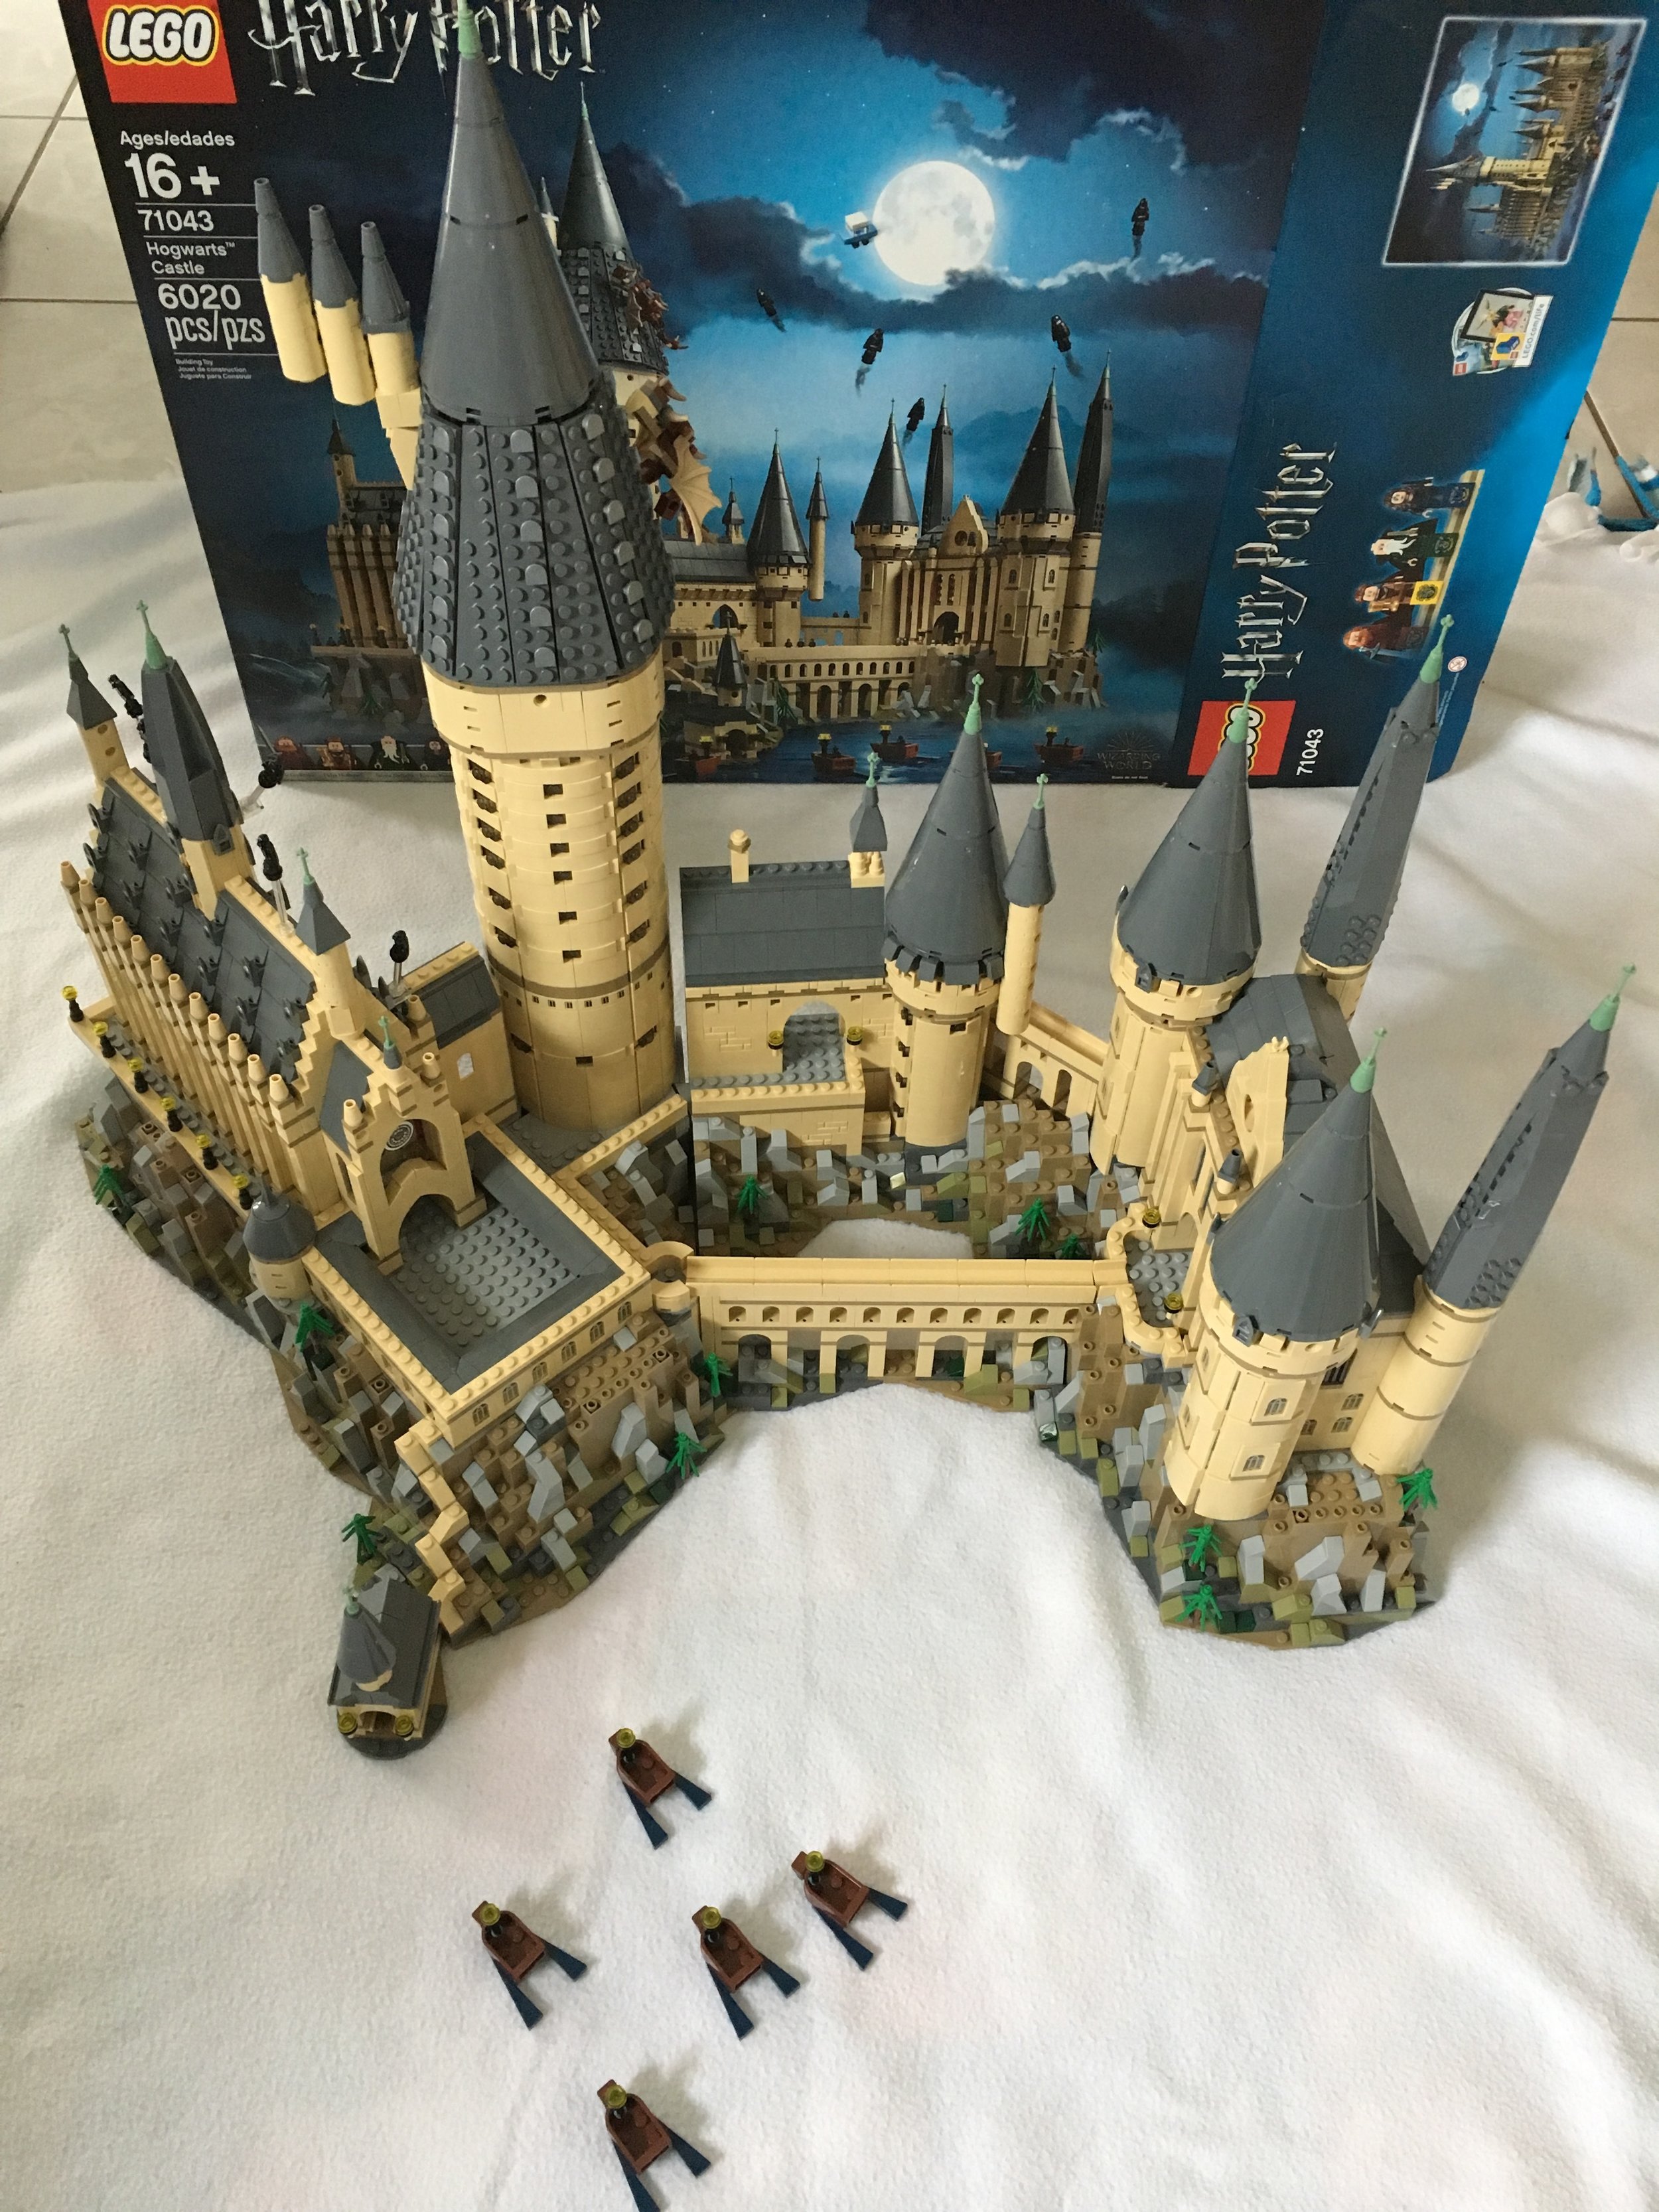 Review #71043-1 - Hogwarts Castle - Harry — Bricks Bricks